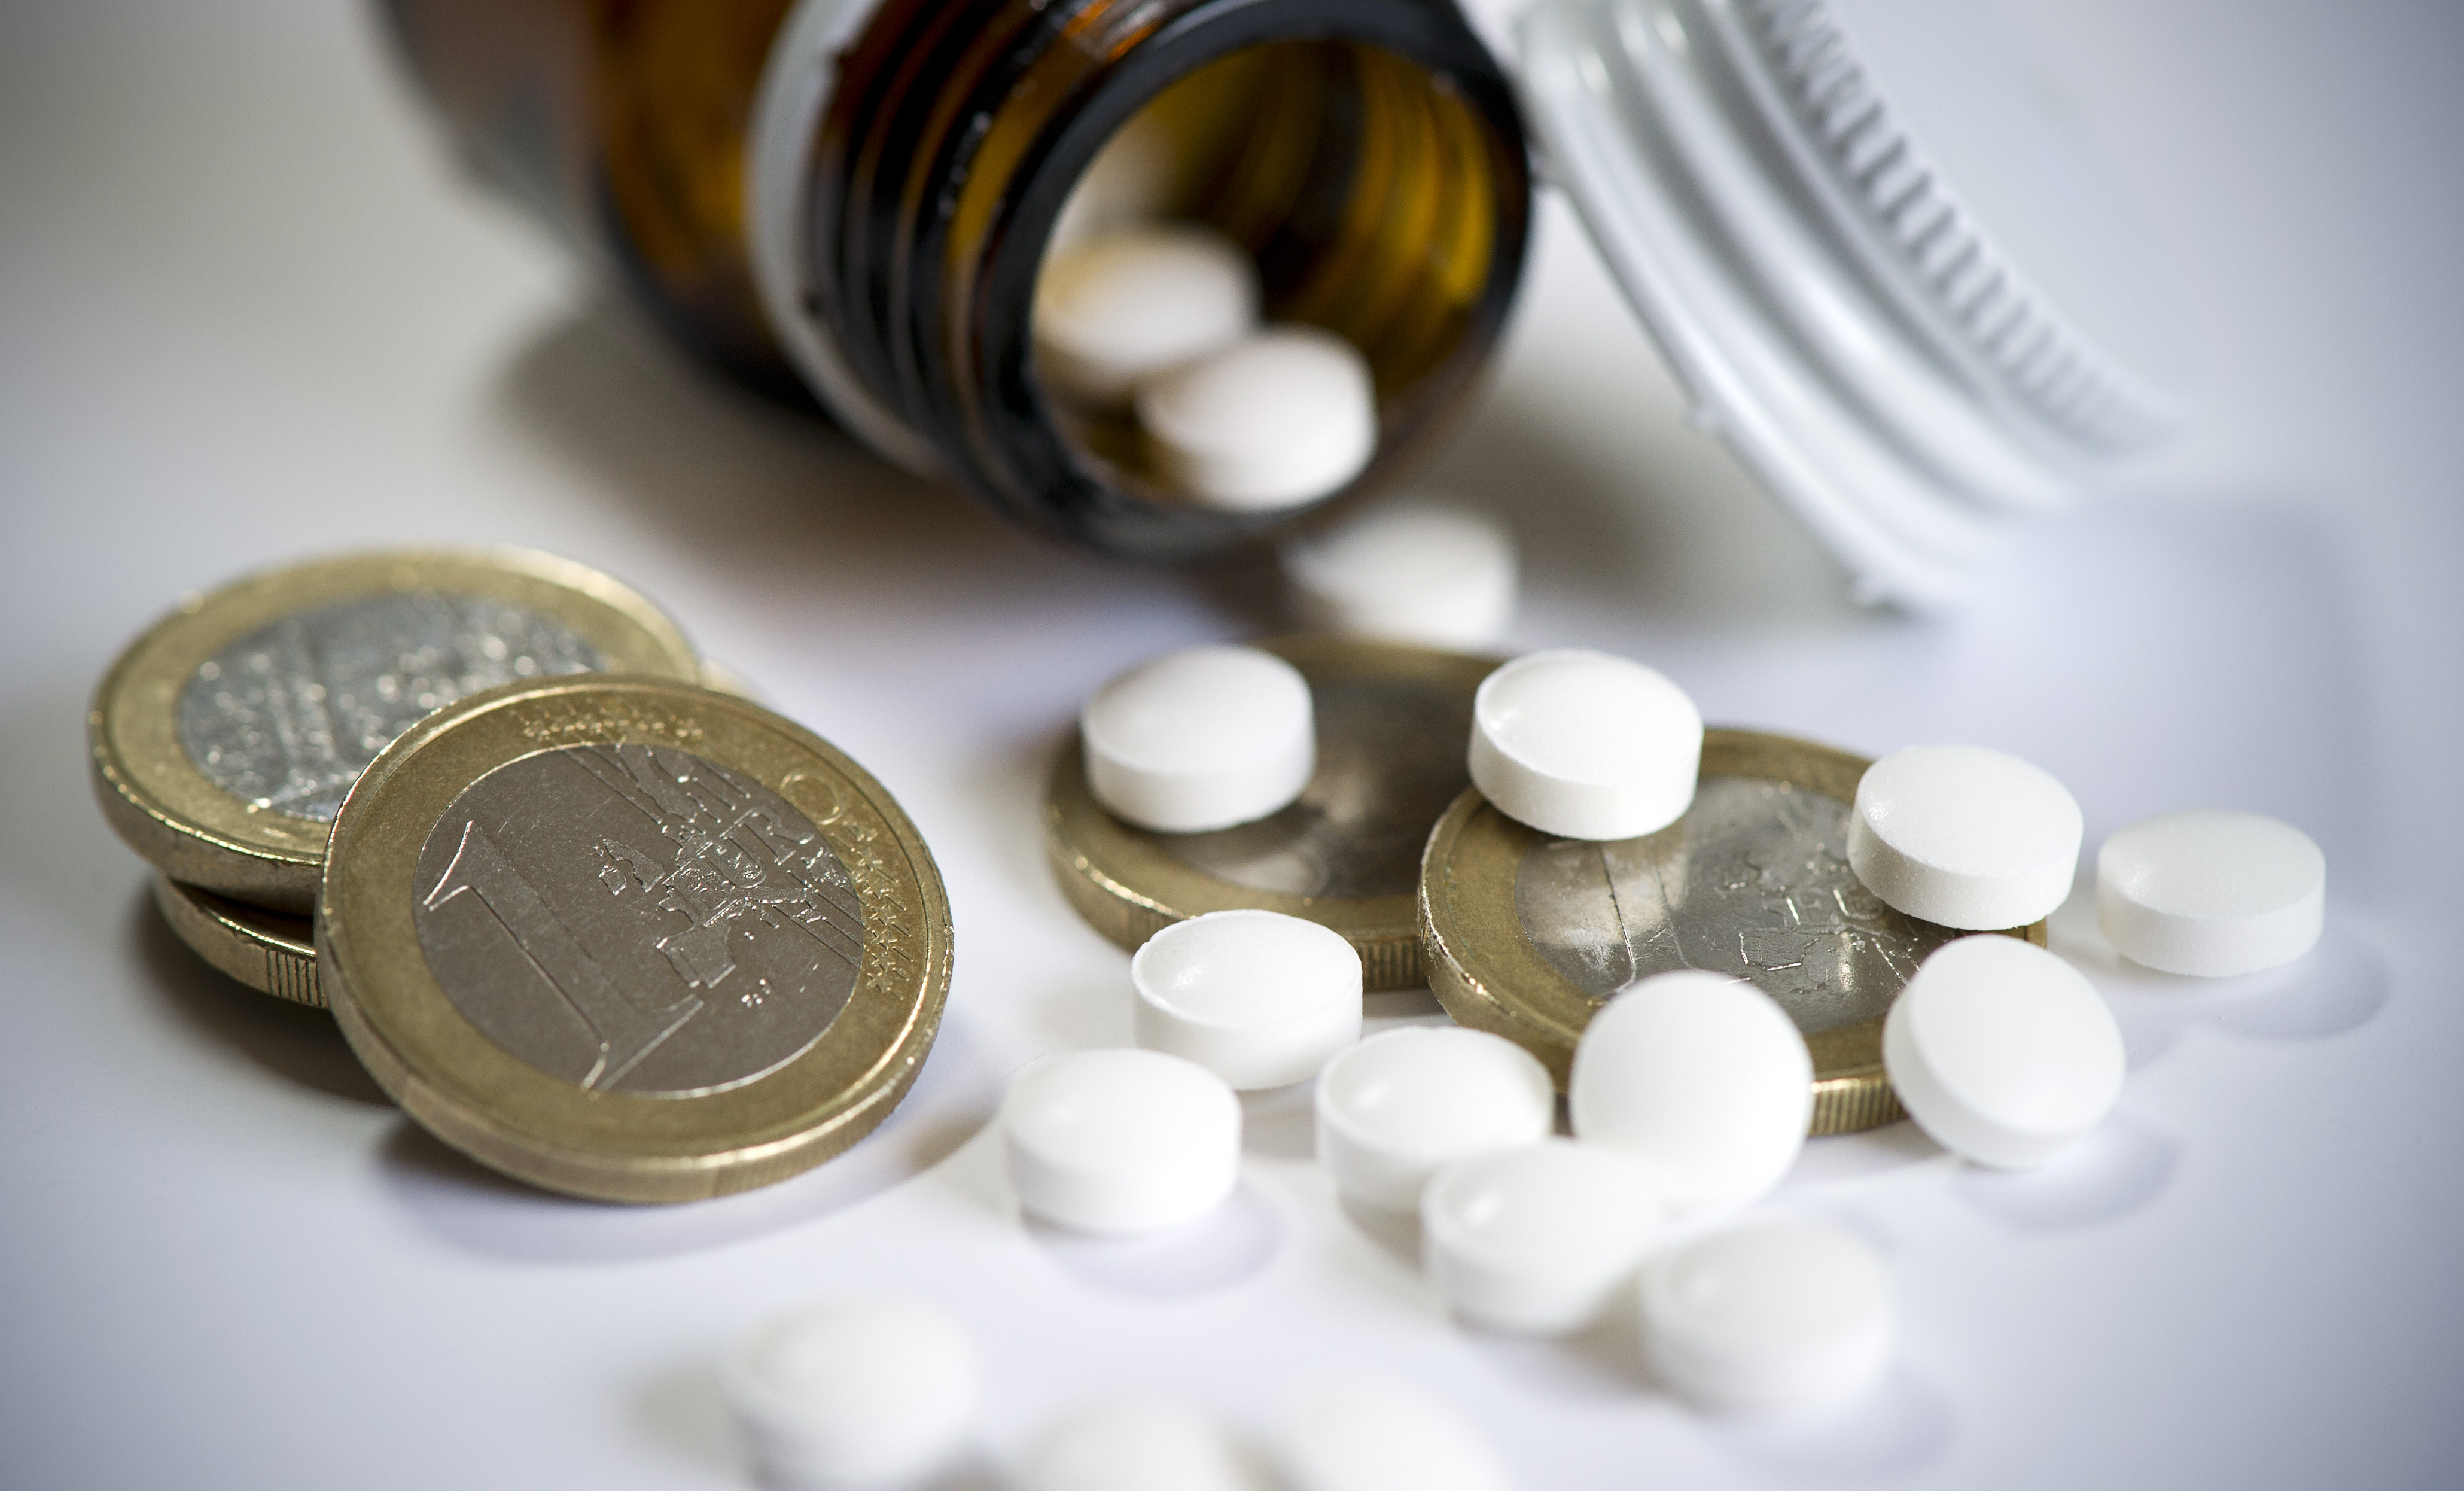 Welke afspraken heeft Schippers gemaakt over de kosten van dure medicijnen?